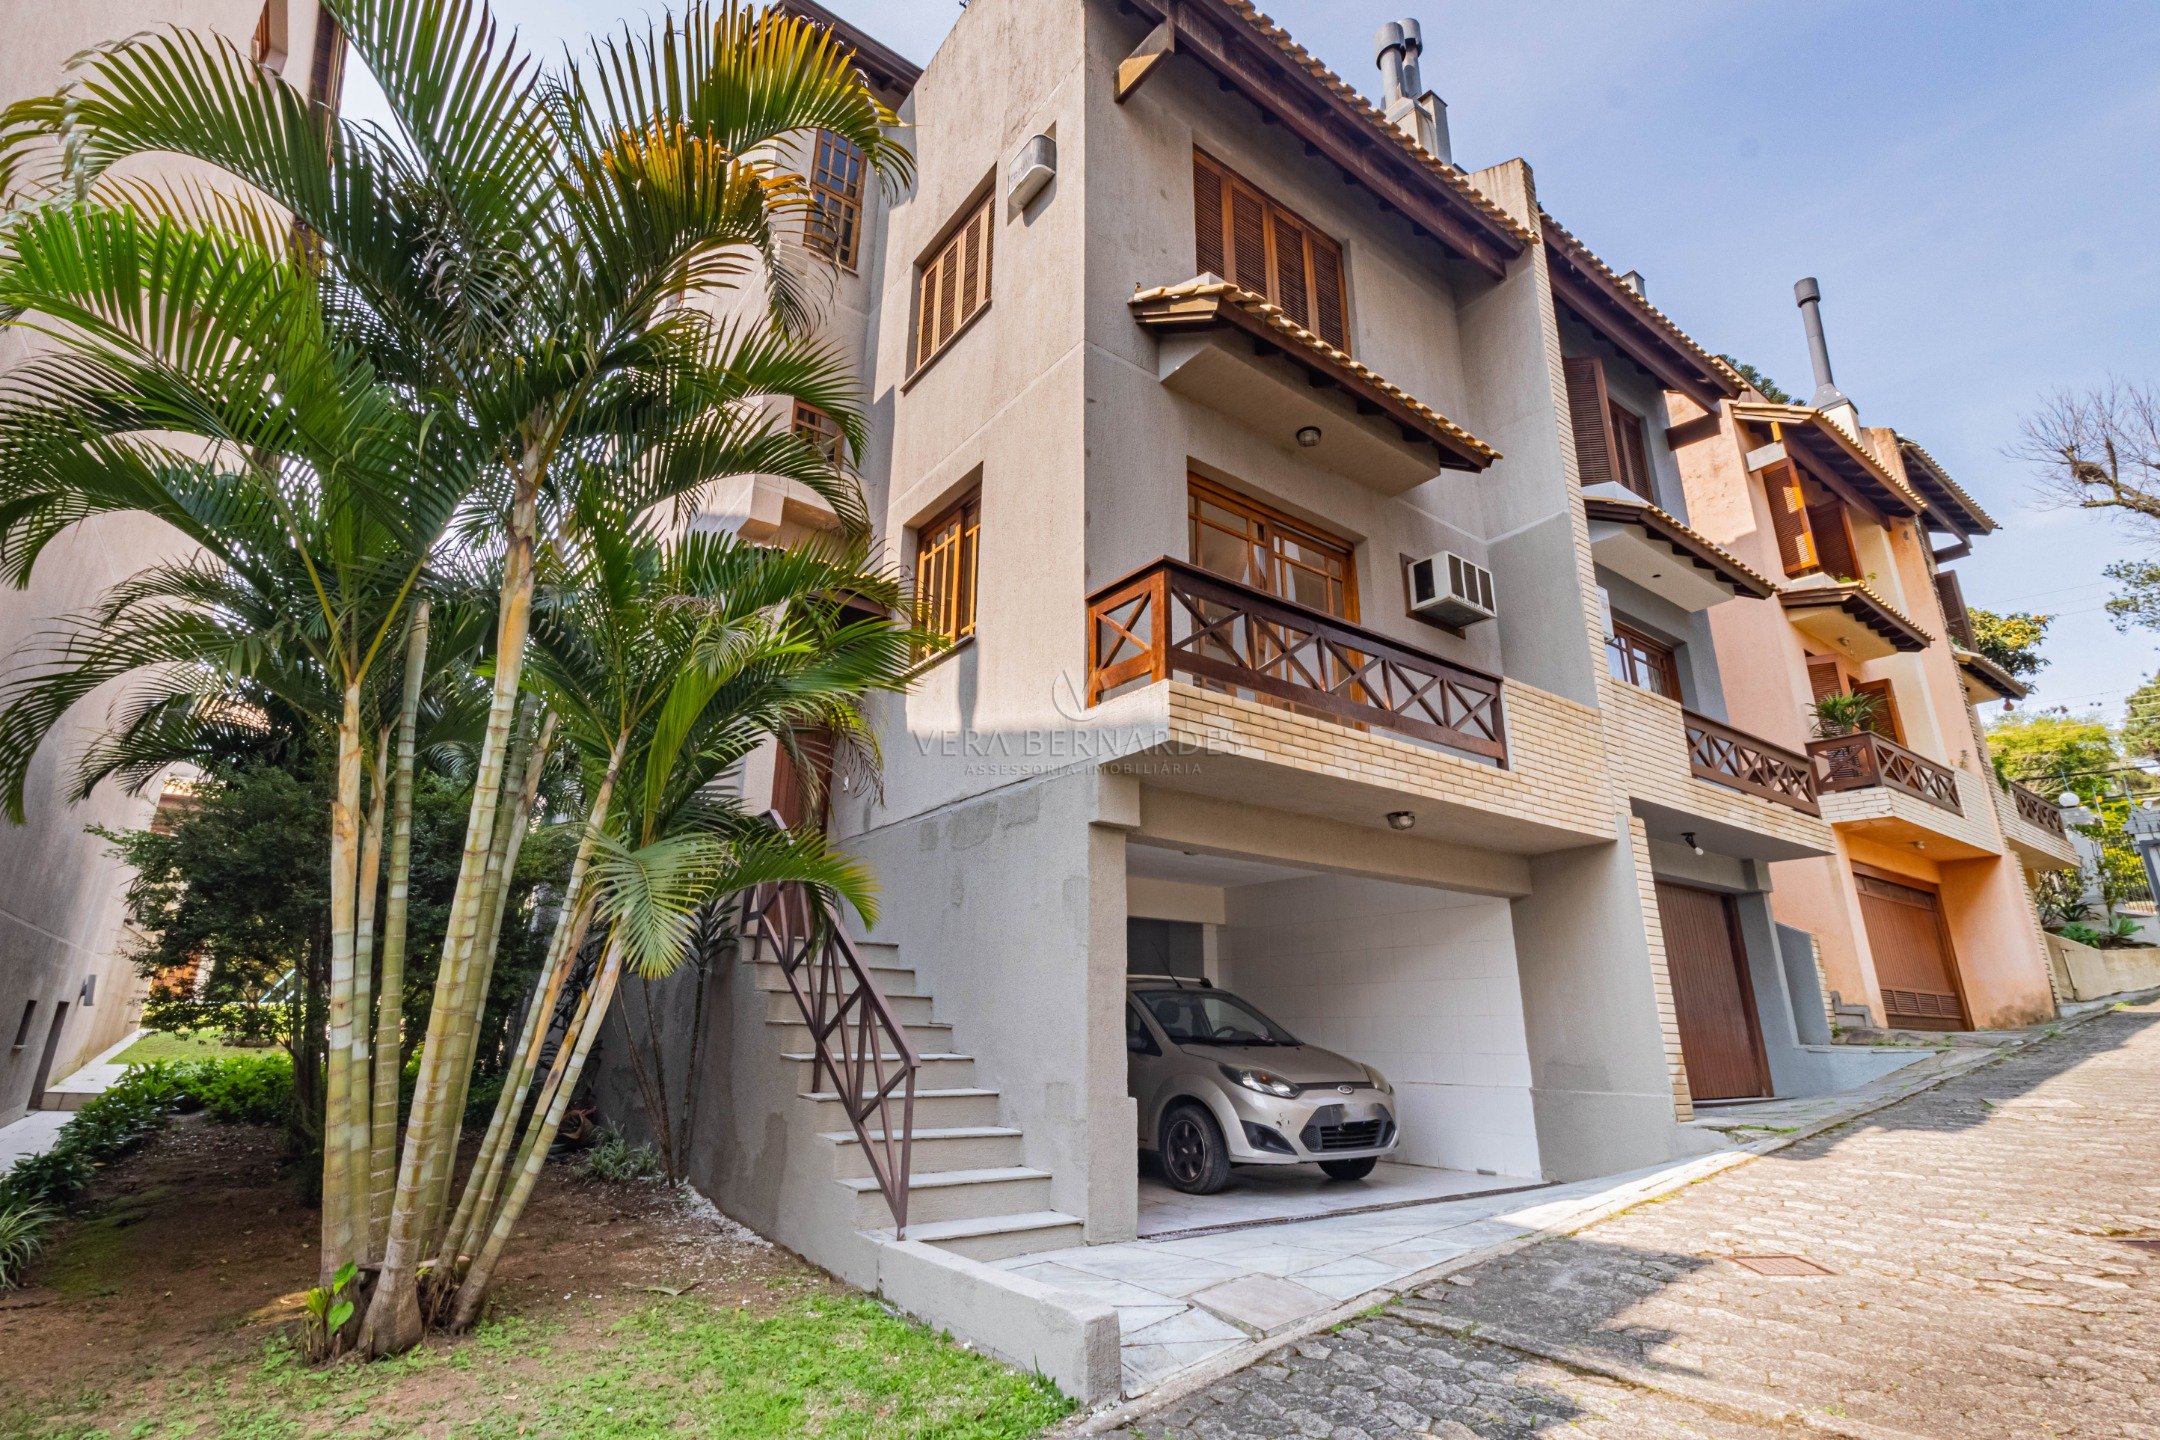 Casa em Condomínio à venda com 3 dormitórios, 197m² e 2 vagas no bairro Tristeza, Zona Sul de Porto Alegre